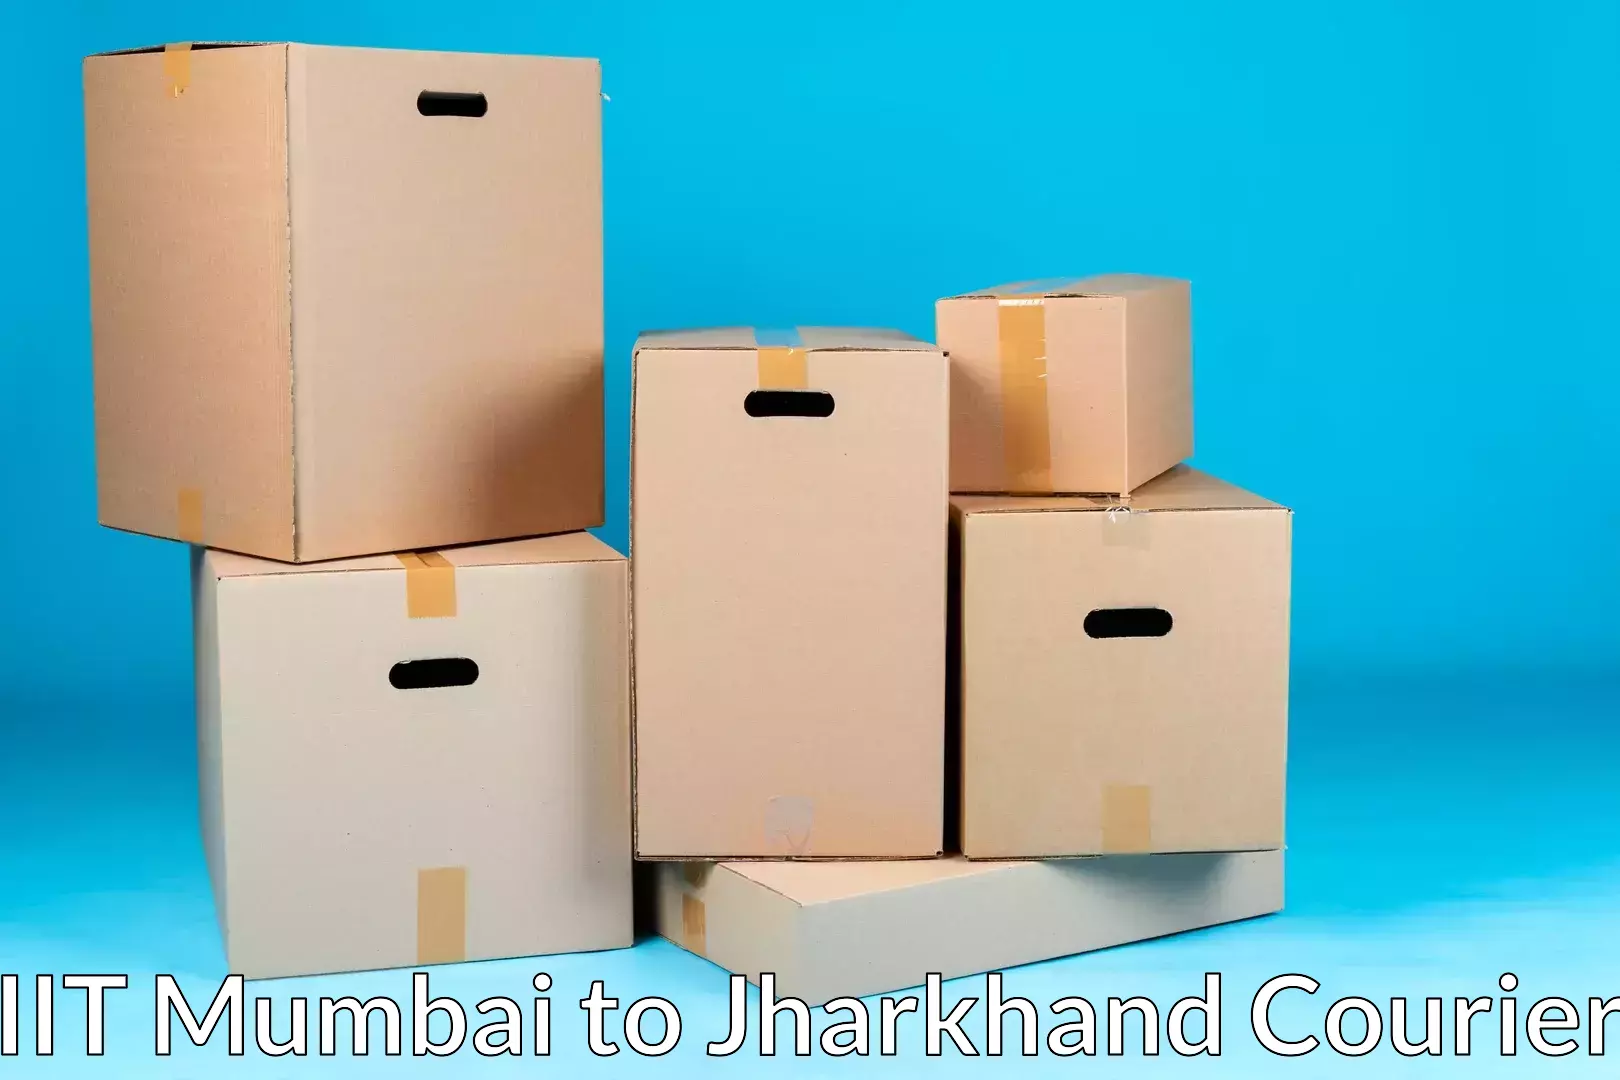 Residential moving experts in IIT Mumbai to Shikaripara